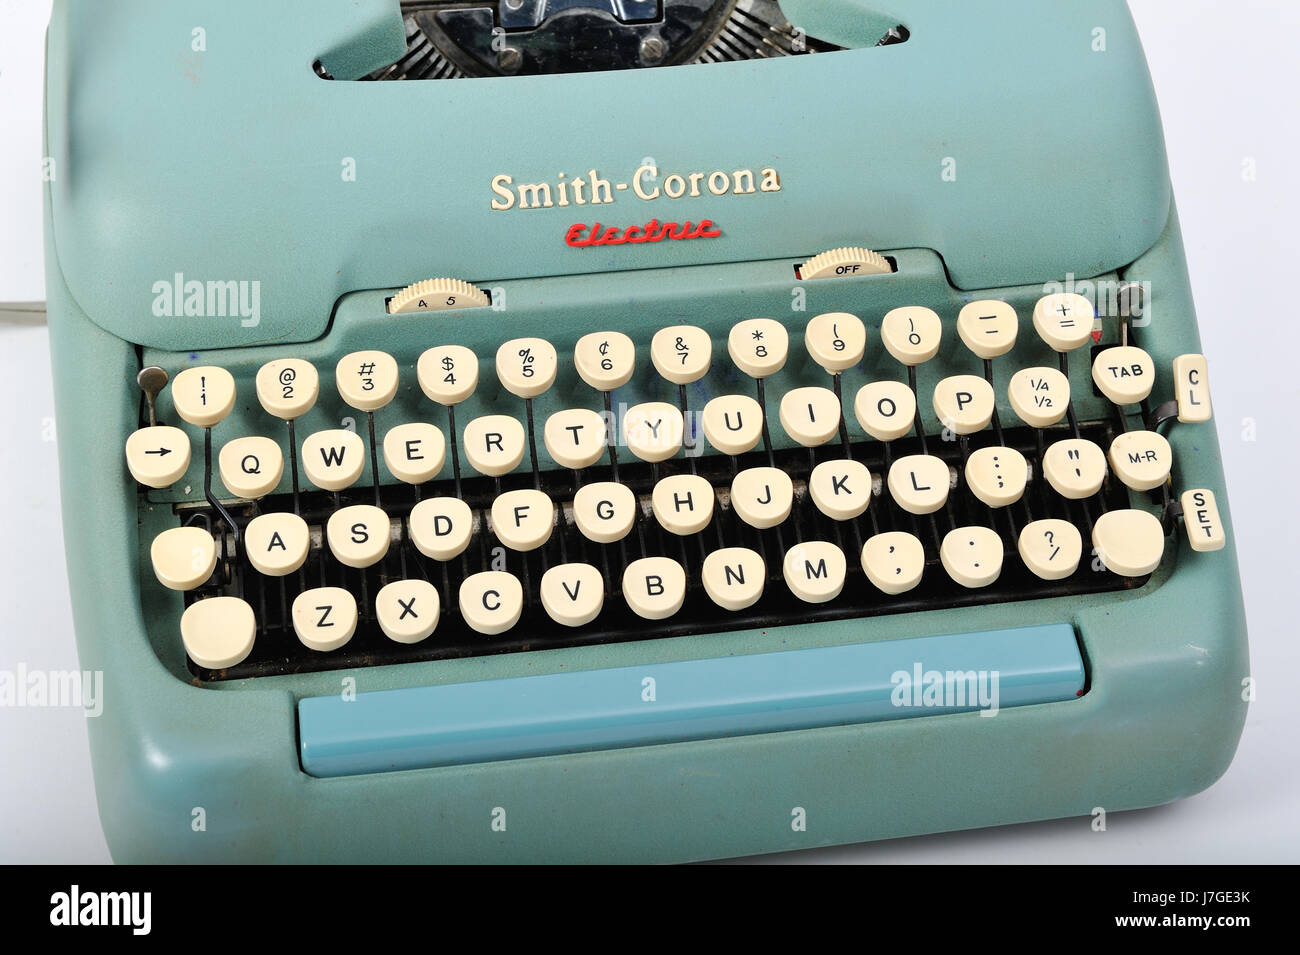 50er Jahre Smith Corona elektrische Schreibmaschine.  Dieses Modell war die erste elektrische Schreibmaschine, obwohl es immer noch eine manuelle Rückkehr hatte. Stockfoto